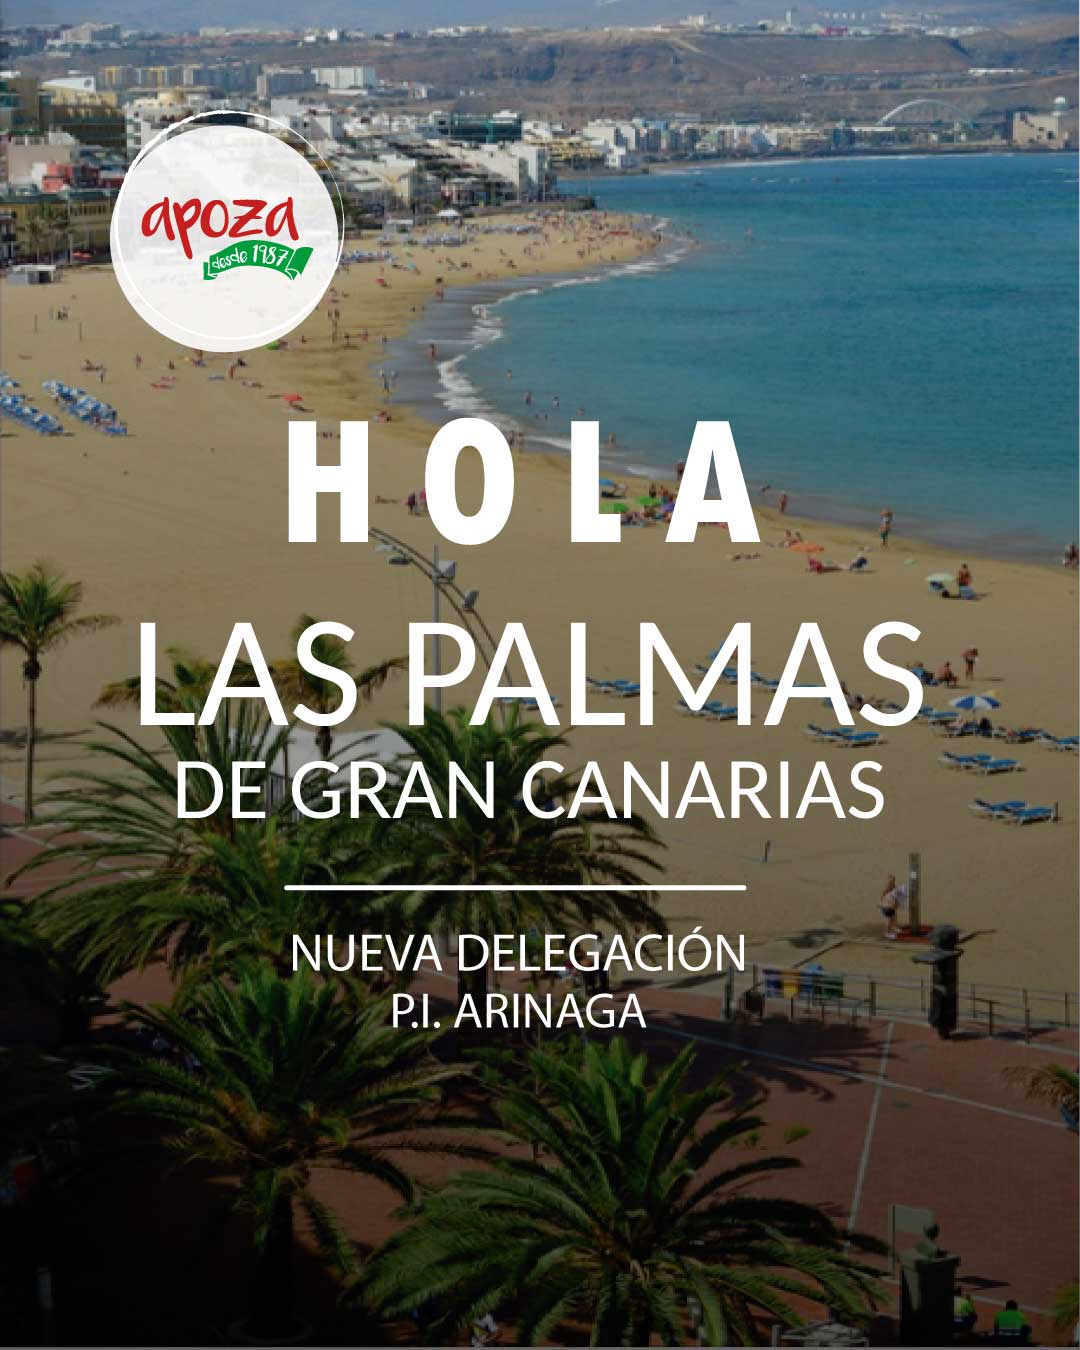 Nueva delegación Las Palmas de Gran Canaria